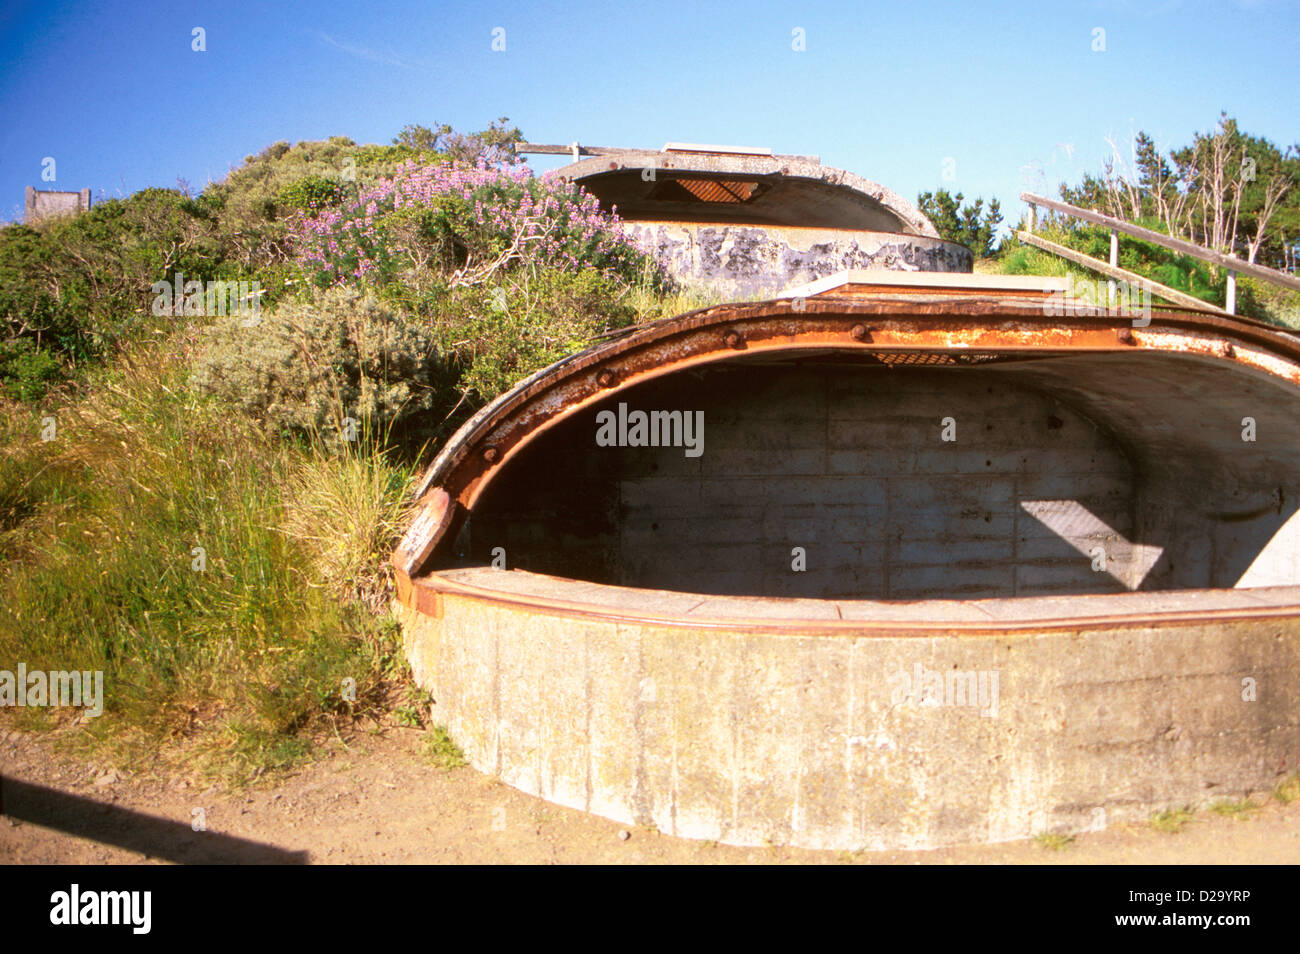 La Californie, San Francisco, Muir Beach. Les bunkers de la Seconde Guerre mondiale aux États-Unis Banque D'Images